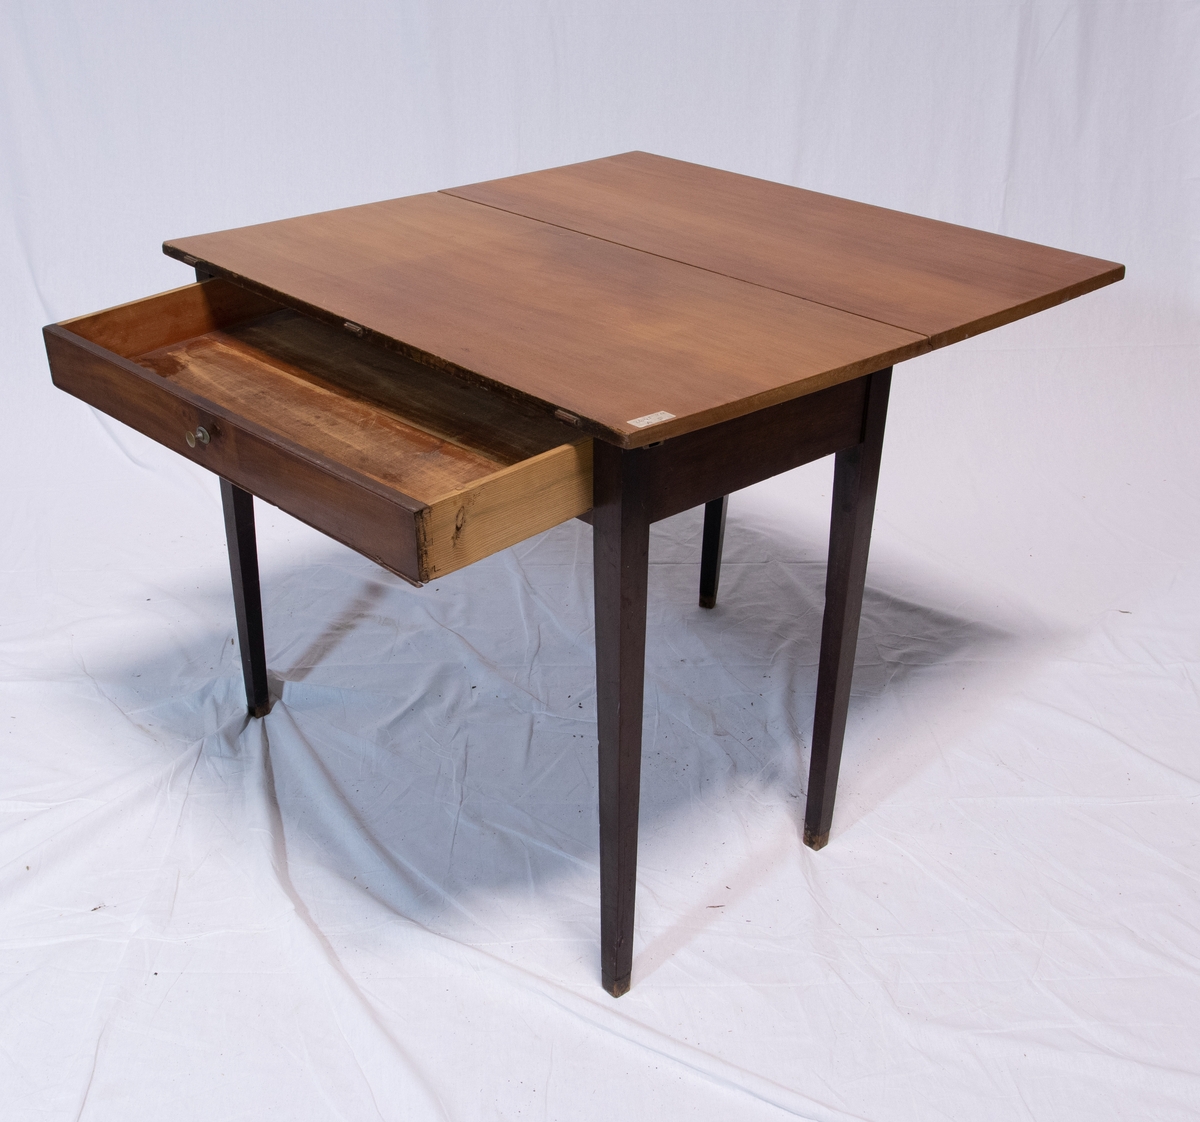 Todelt spisebord bestående av to nesten like rektangulære brune bord med en hengslet rektangulær vinge hver. Det ene bordet har skuffe.